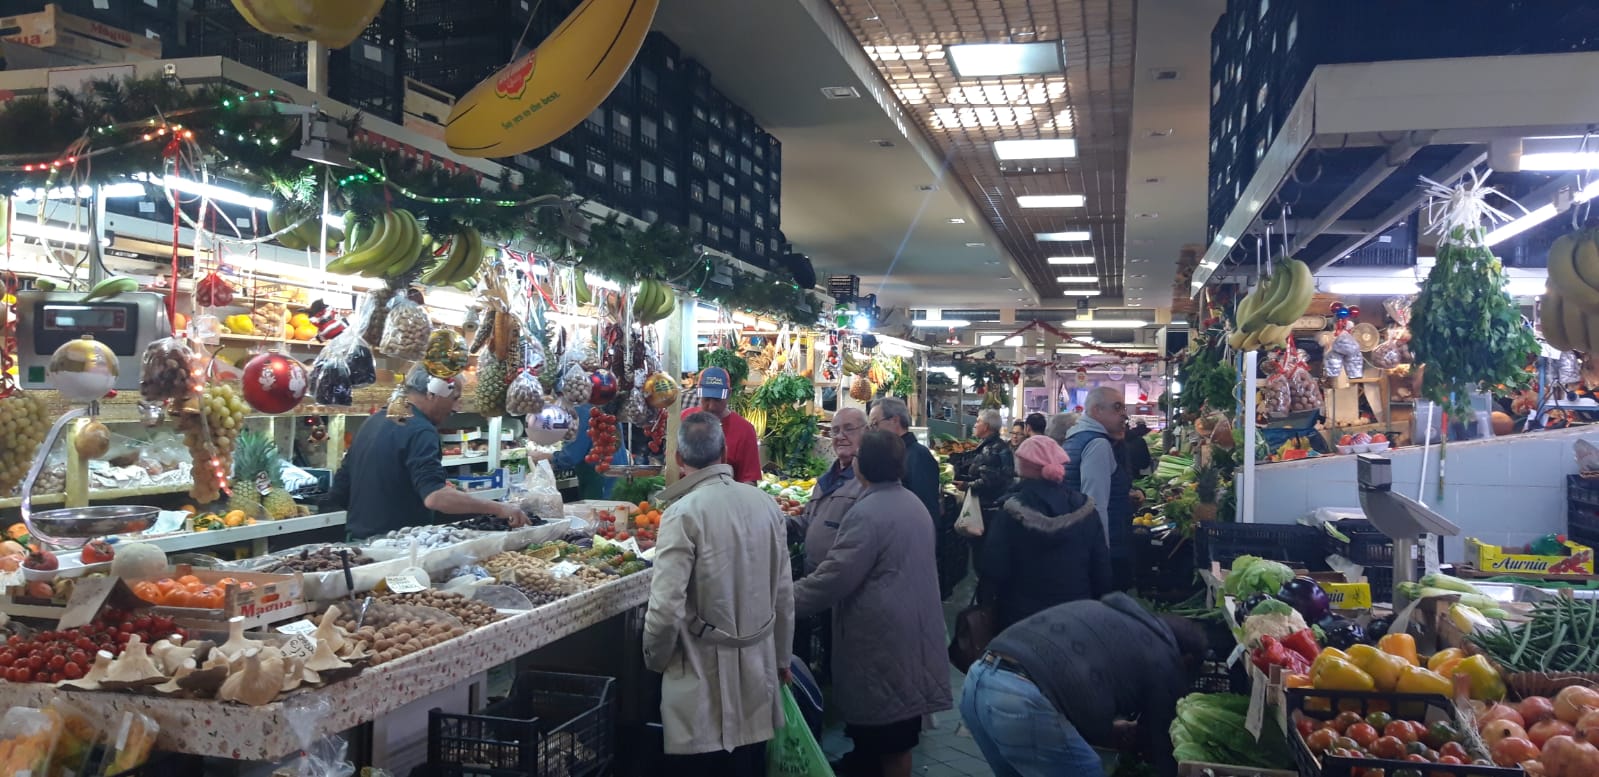 San Benedetto corsa agli acquisti per il menù di Natale | Cagliari -  Vistanet